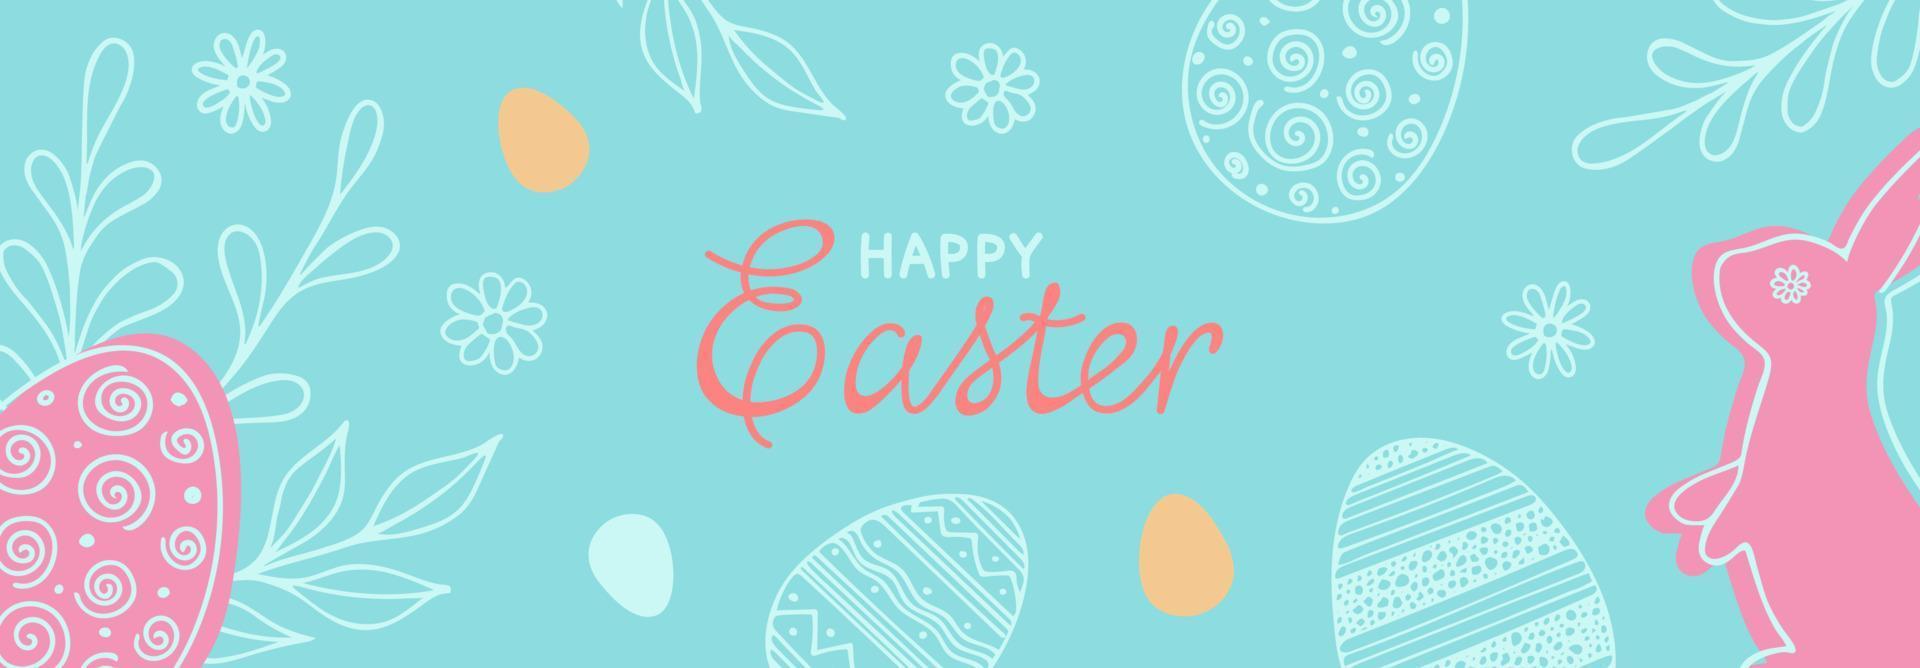 contento Pascua de Resurrección bandera. mano dibujado vector ilustración con conejo, huevos, leña menuda, flores y letras para paty Pascua de Resurrección diseño en pastel colores.